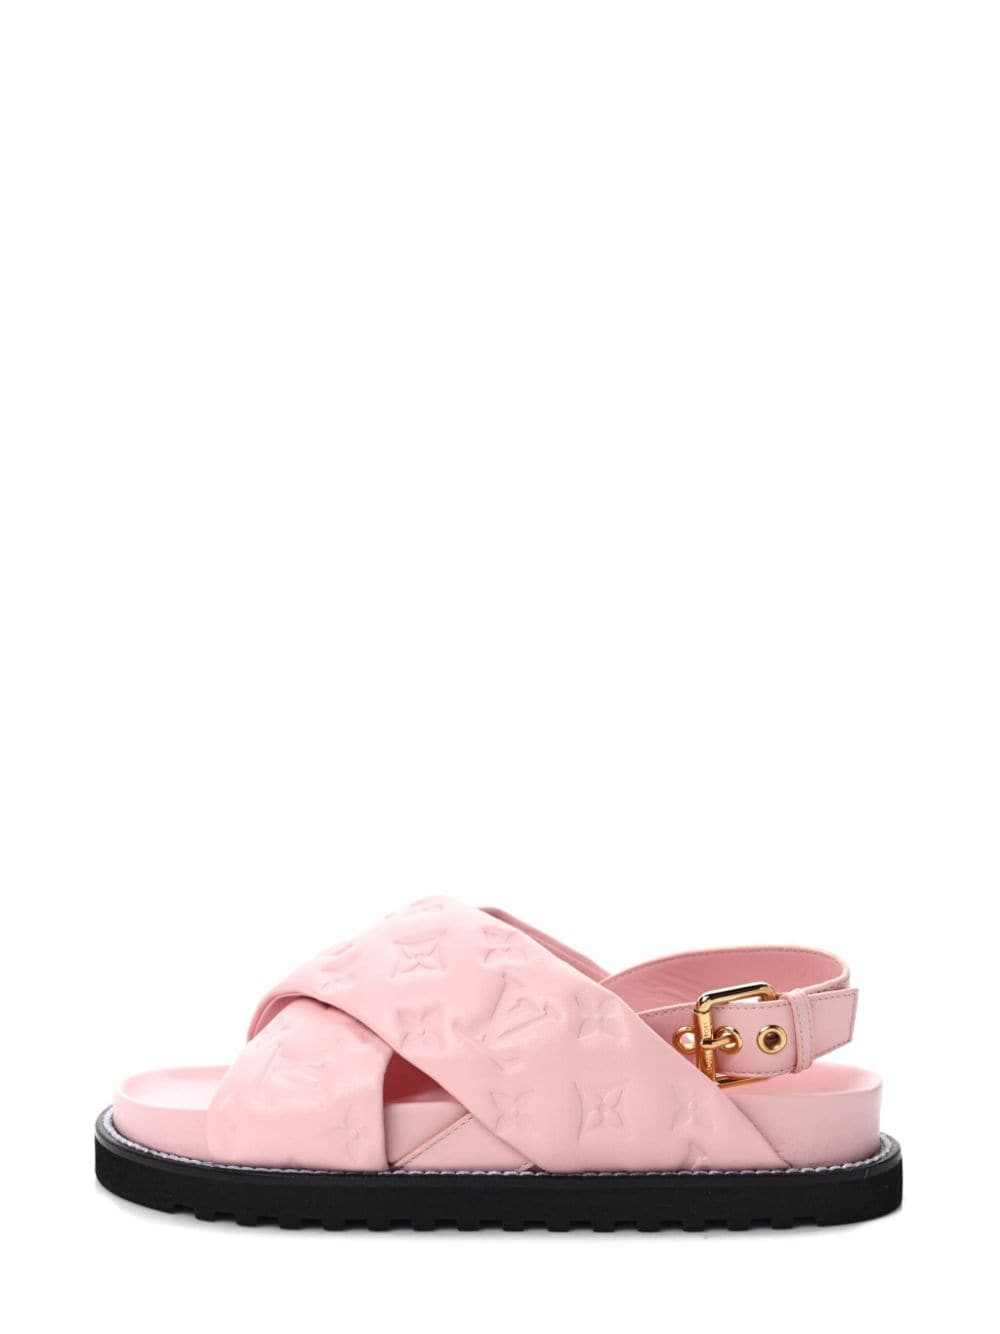 Louis Vuitton Paseo Sandals